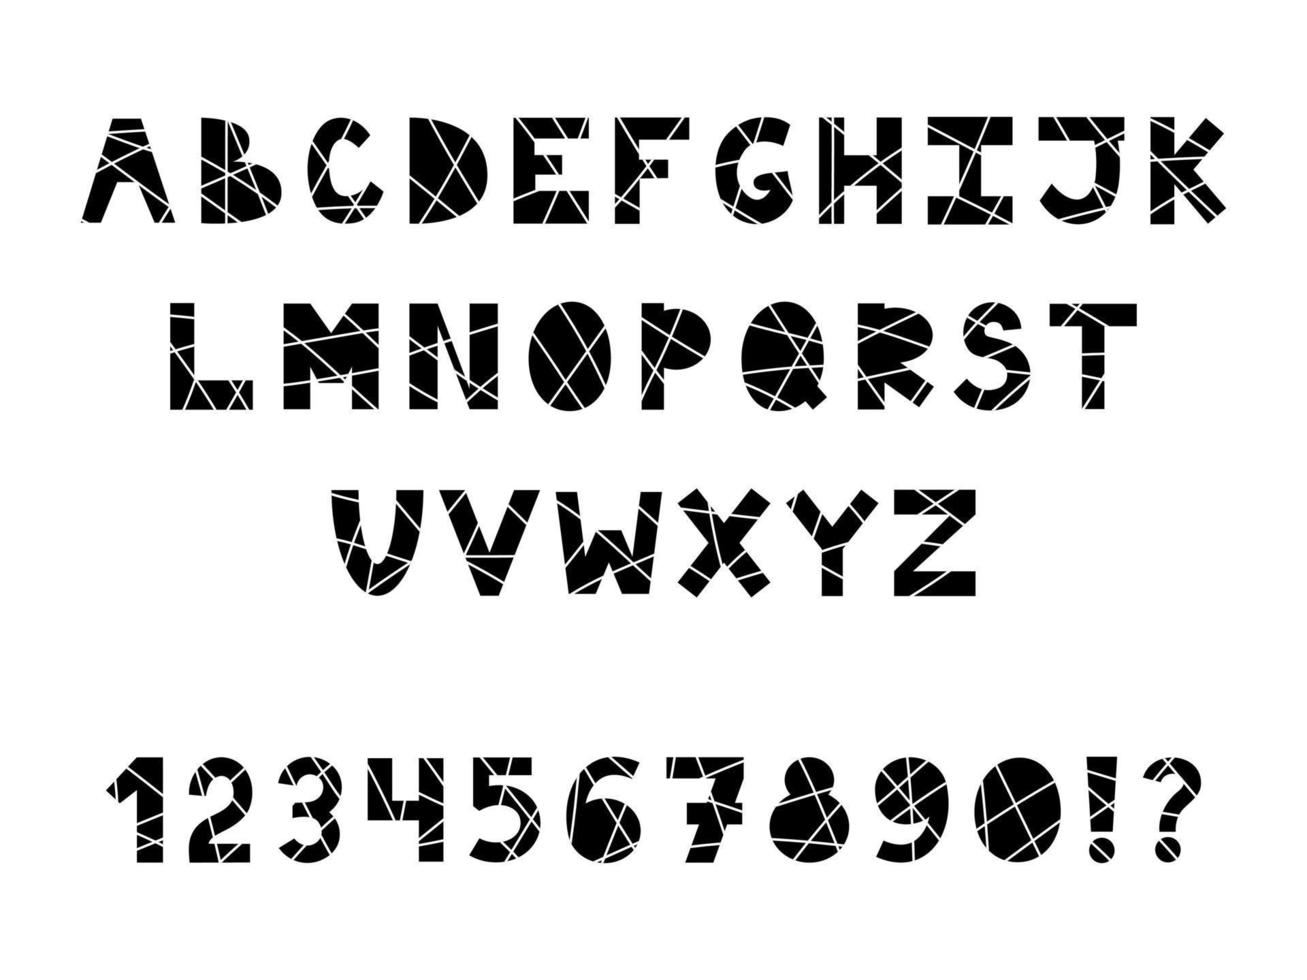 Schwarz-Weiß-Alphabet mit Linien. gestreifte schrift mit buchstaben, zahlen und satzzeichen. Lateinisches Alphabet. vektor